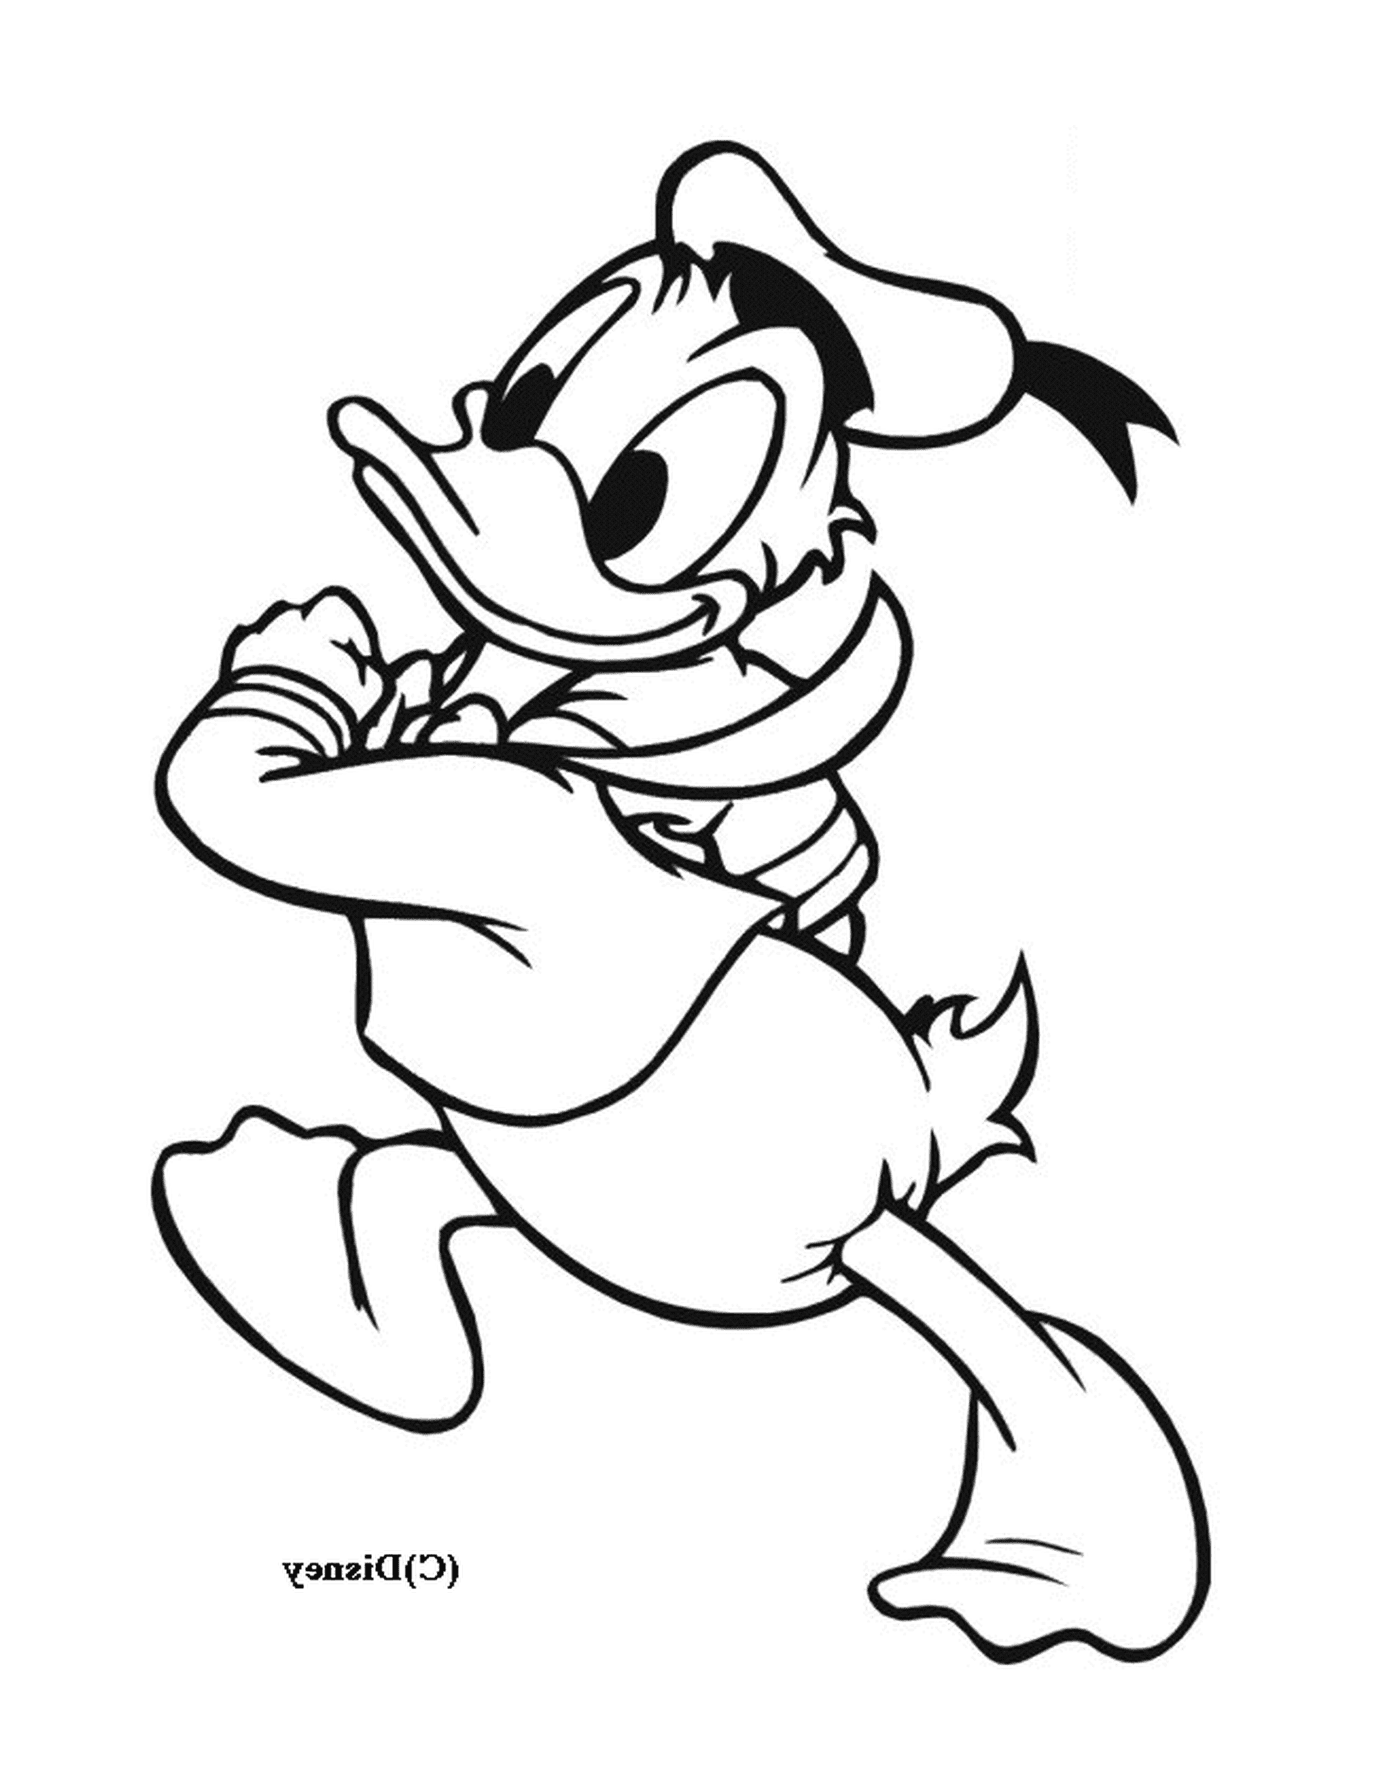  Donald Duck corre felicemente con una corda 